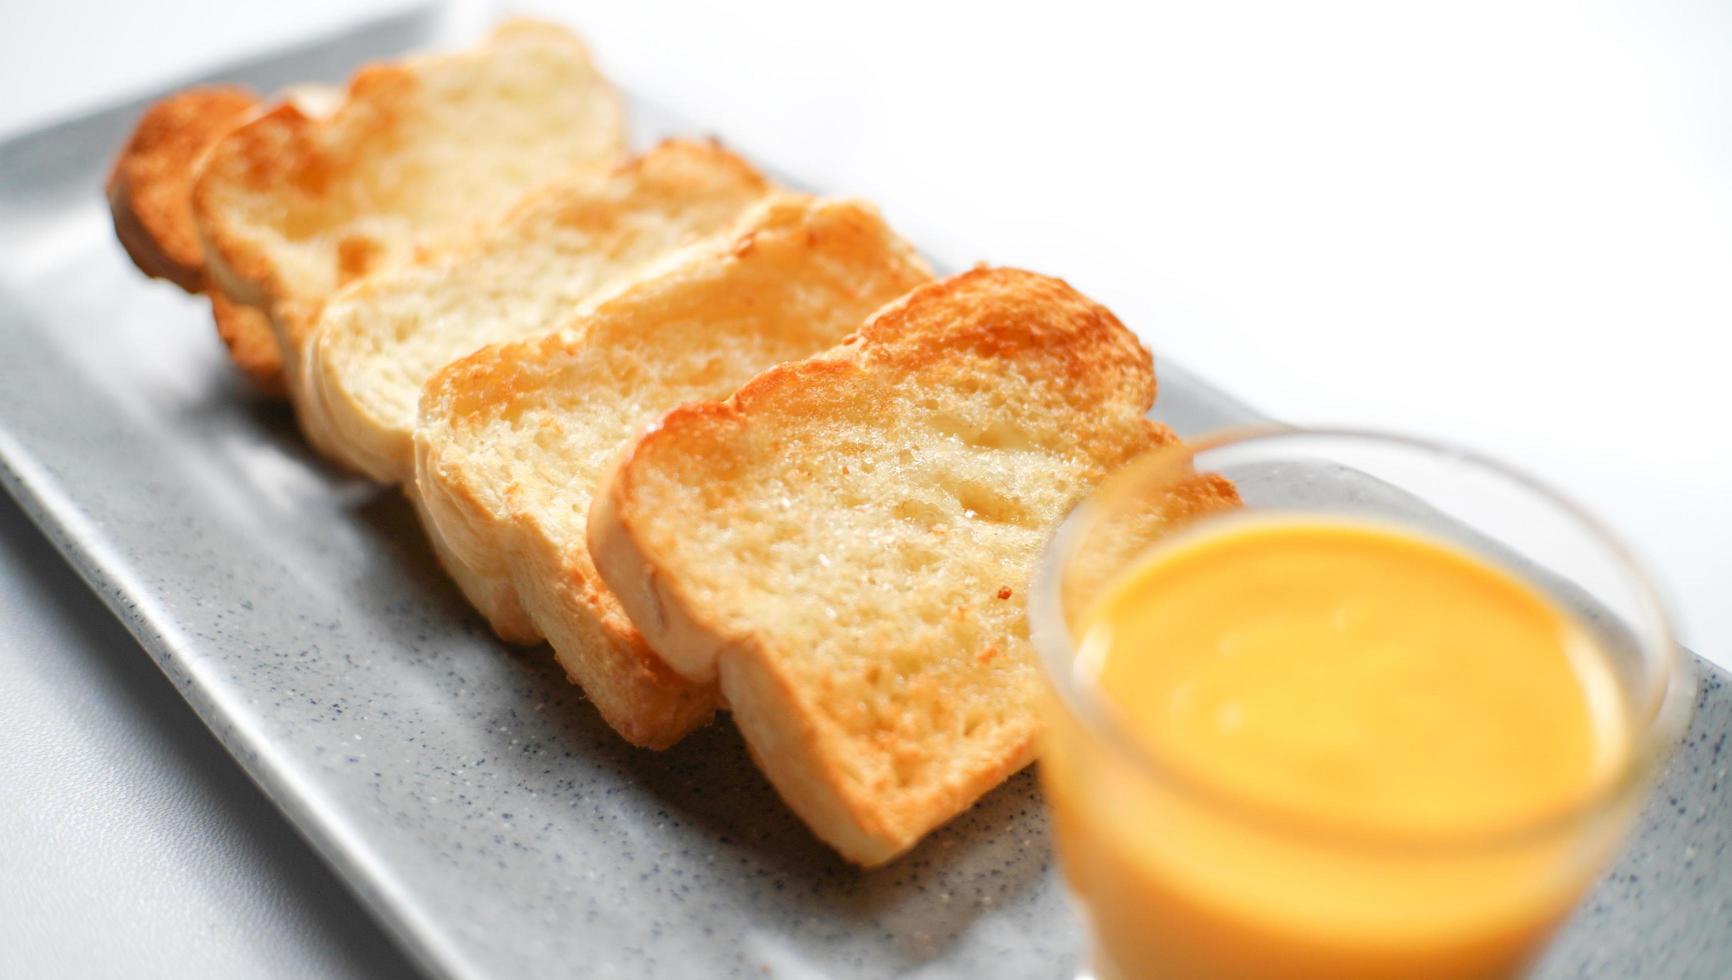 le pain grillé doré servi avec une tasse de sauce au fromage. un menu typique du petit-déjeuner pour les occidentaux. photo